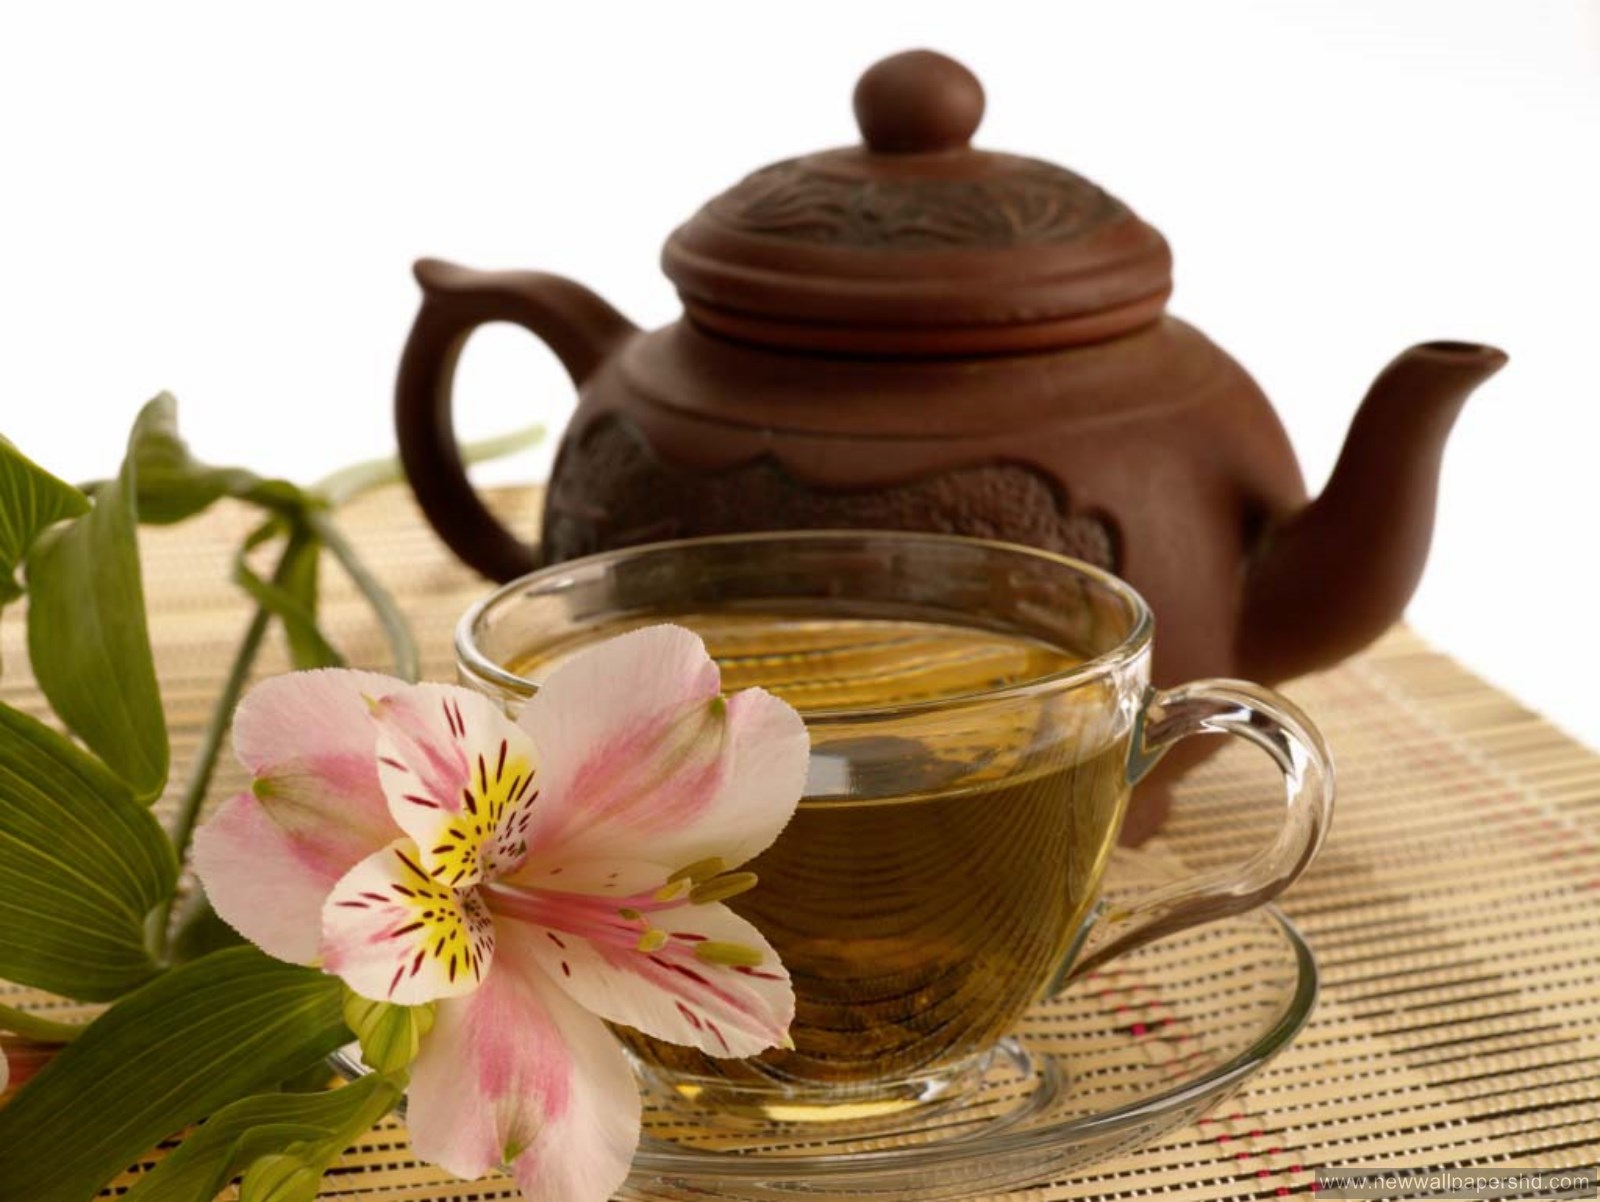 bonjour papier peint tasse de thé,théière,tisane chinoise,couvercle,thé,vaisselle